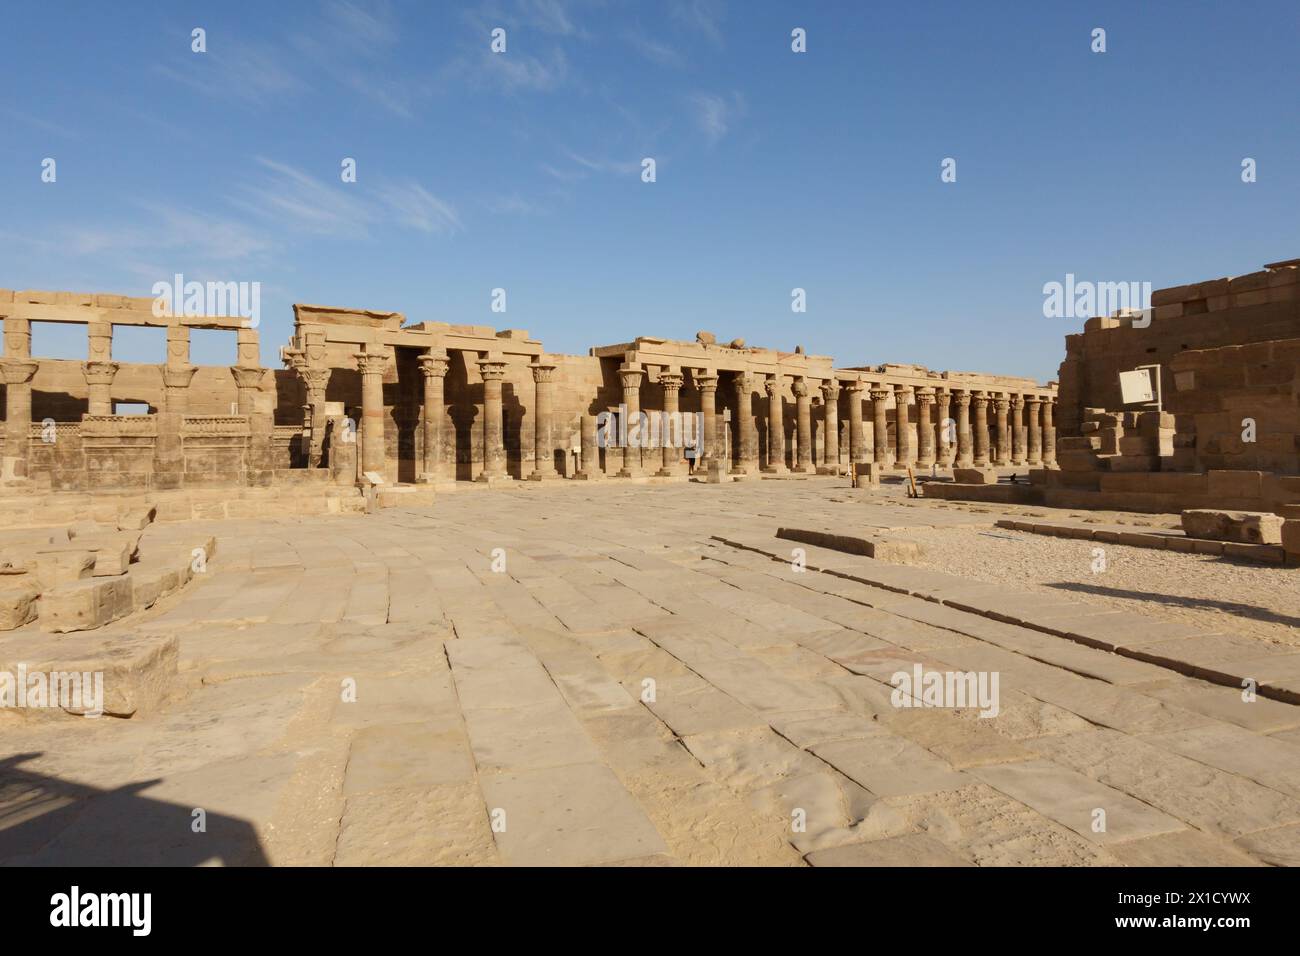 Colonnades orientales, complexe du temple de Philae, île d'Agilkia, réservoir du barrage d'Assouan. Lieu de sépulture d'Osiris. Égypte Banque D'Images